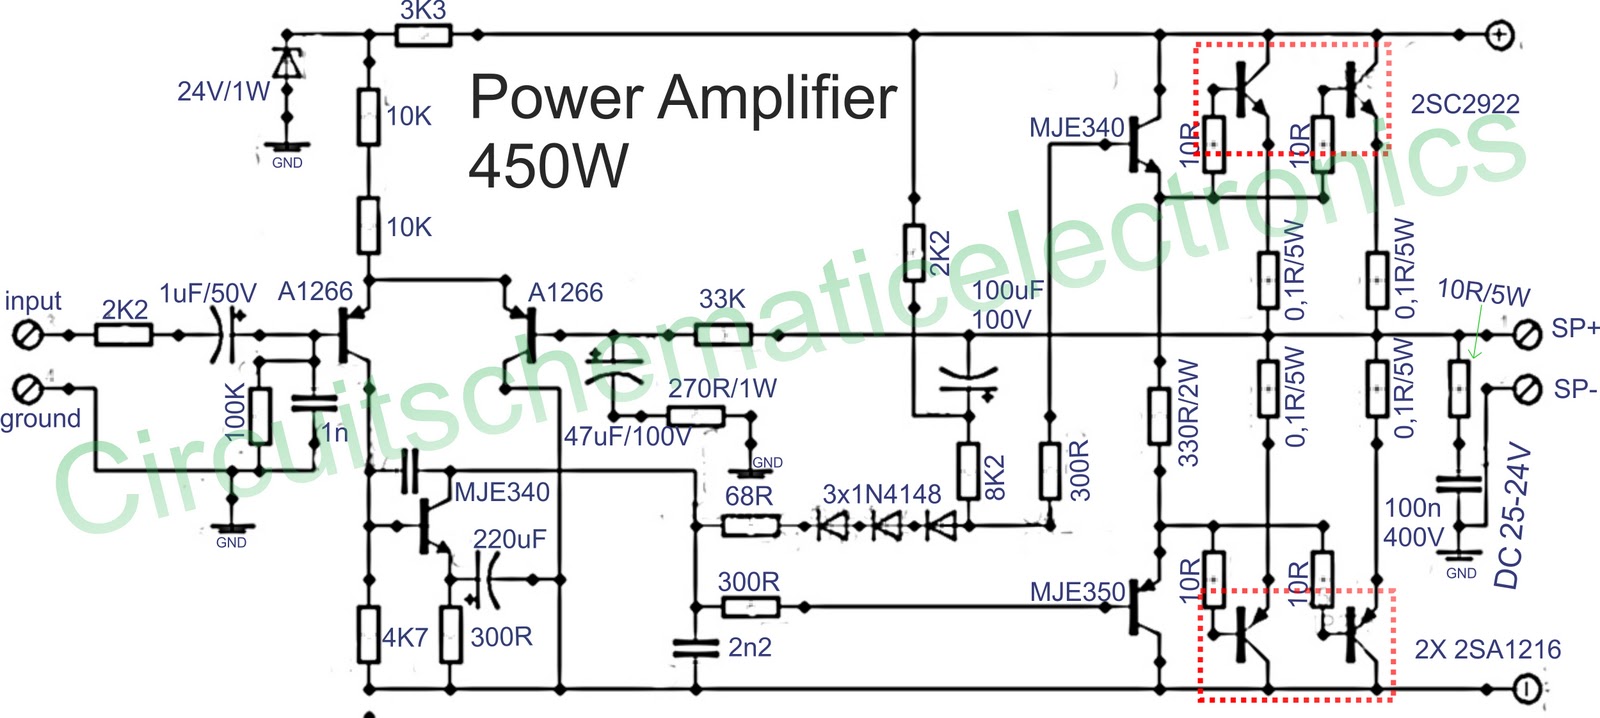 5000W Power Amplifier Circuit Diagram Pdf 1